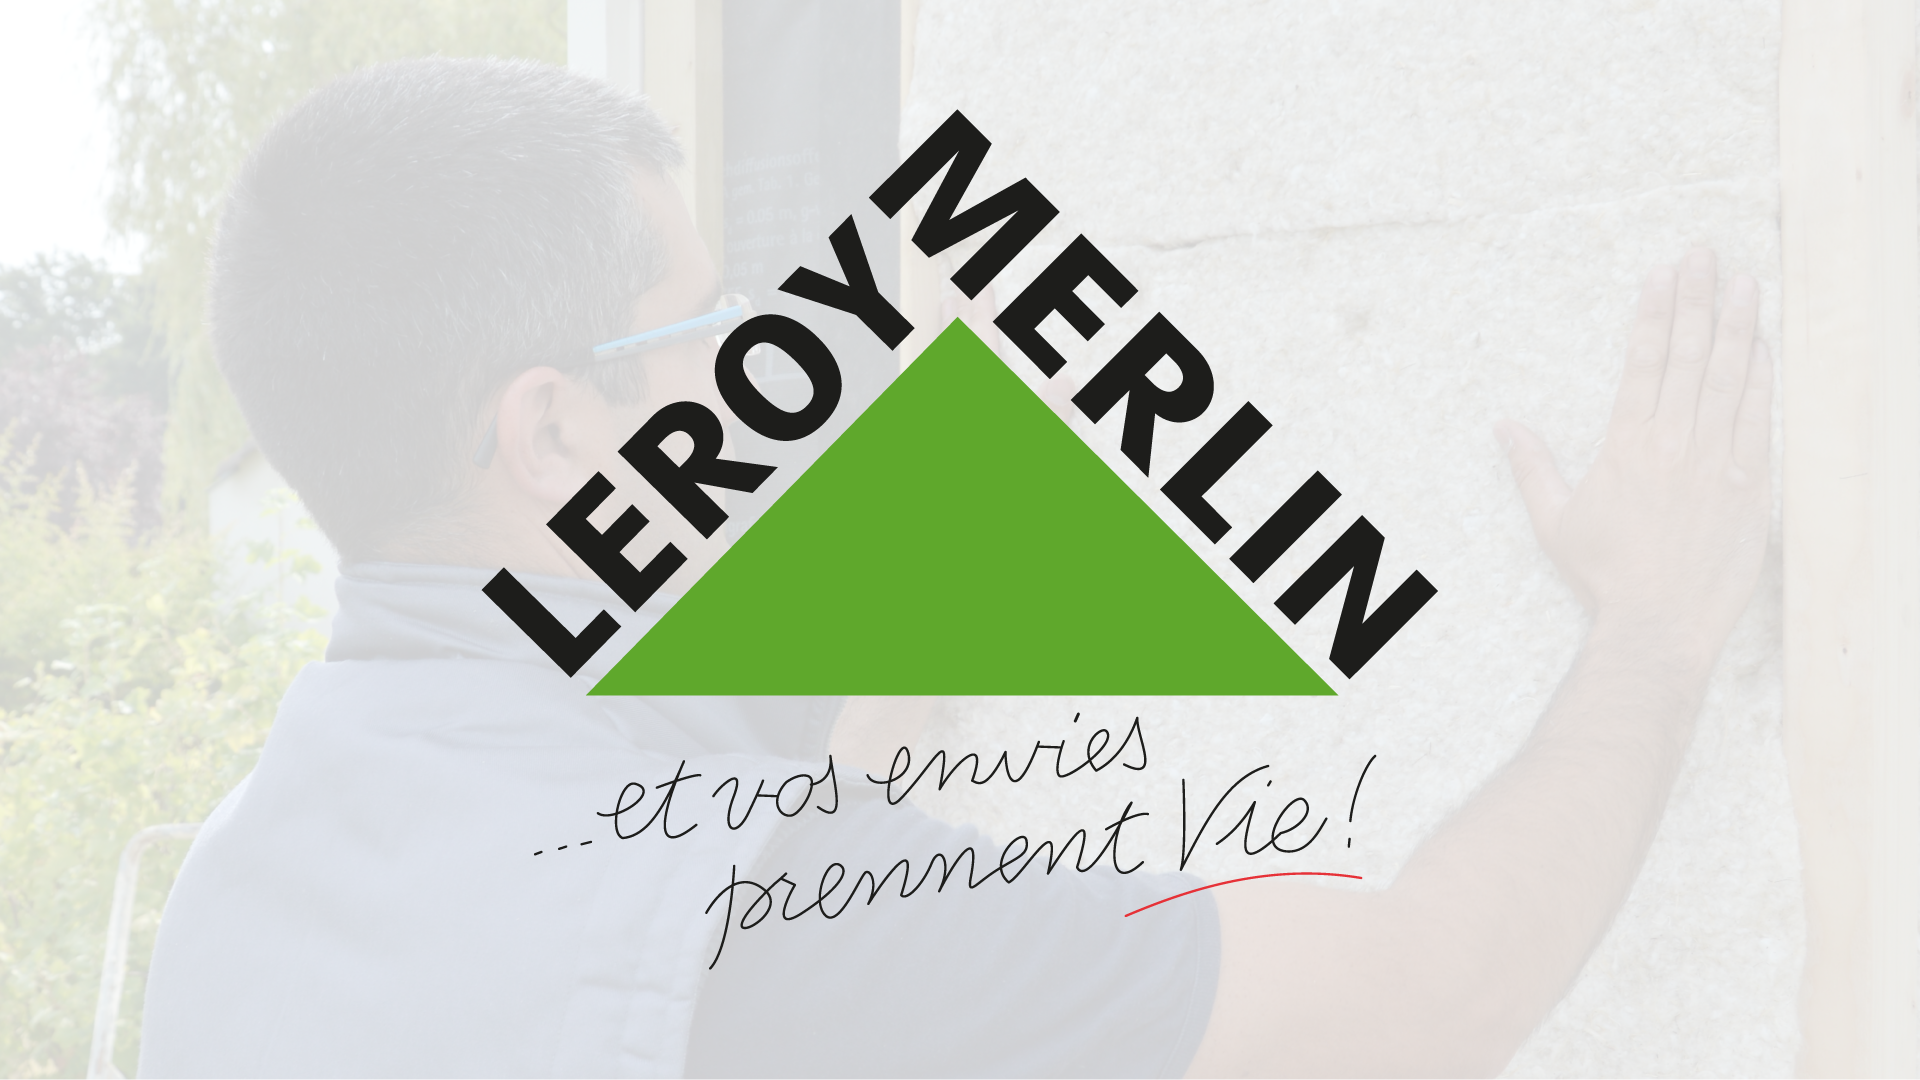 Les produits Biofib sont disponibles chez Leroy Merlin